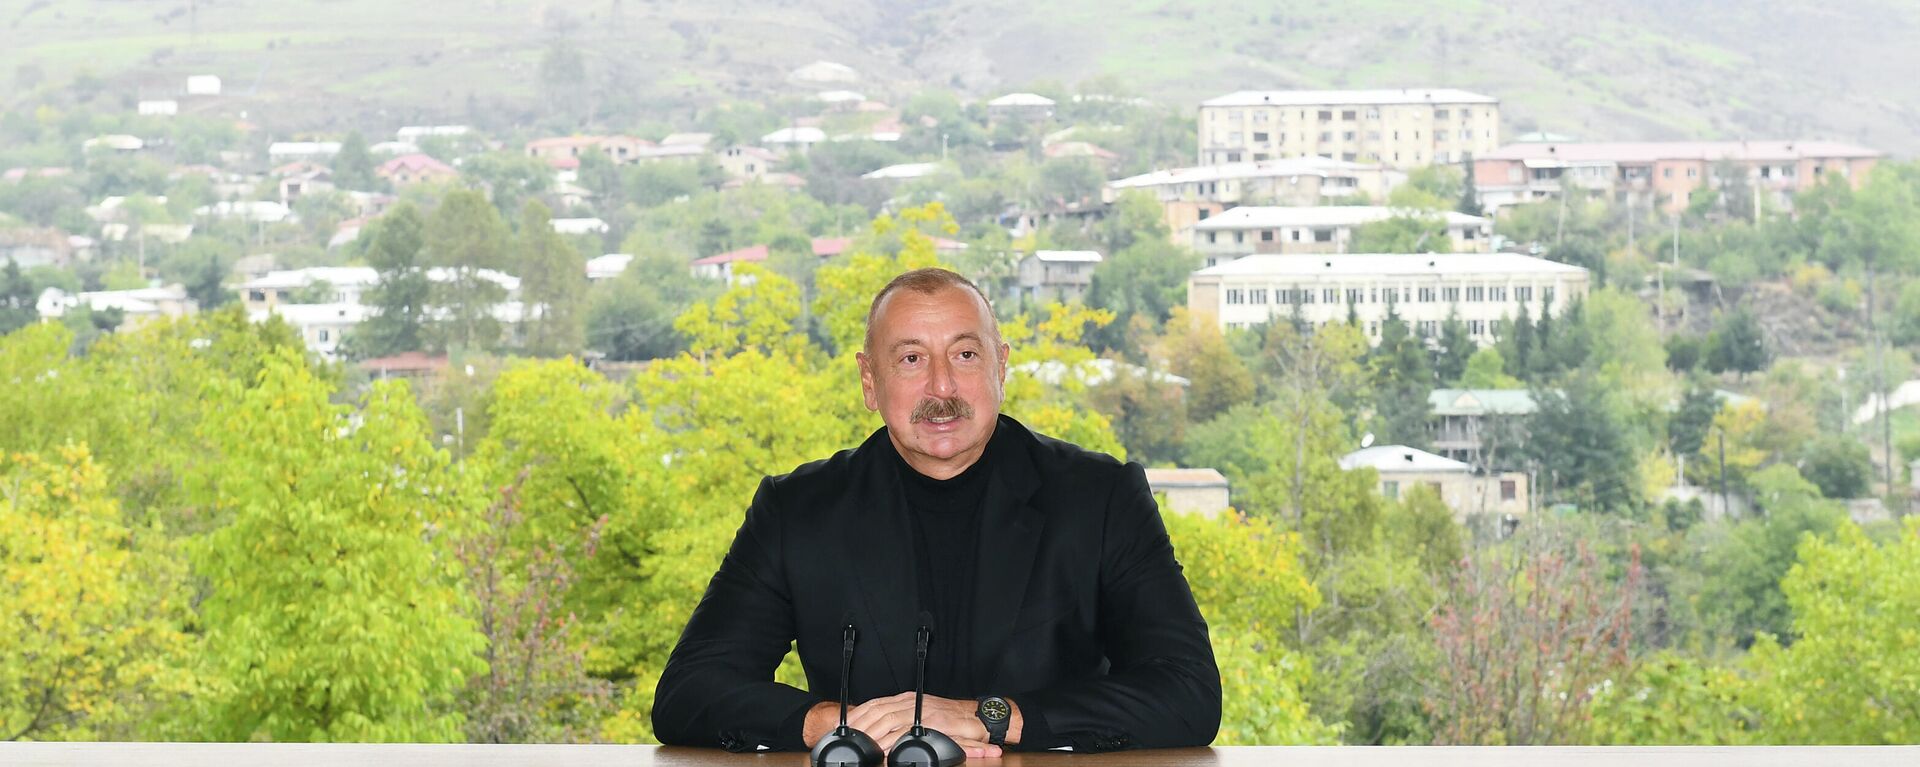 Prezident İlham Əliyev, arxiv şəkli - Sputnik Azərbaycan, 1920, 07.11.2021